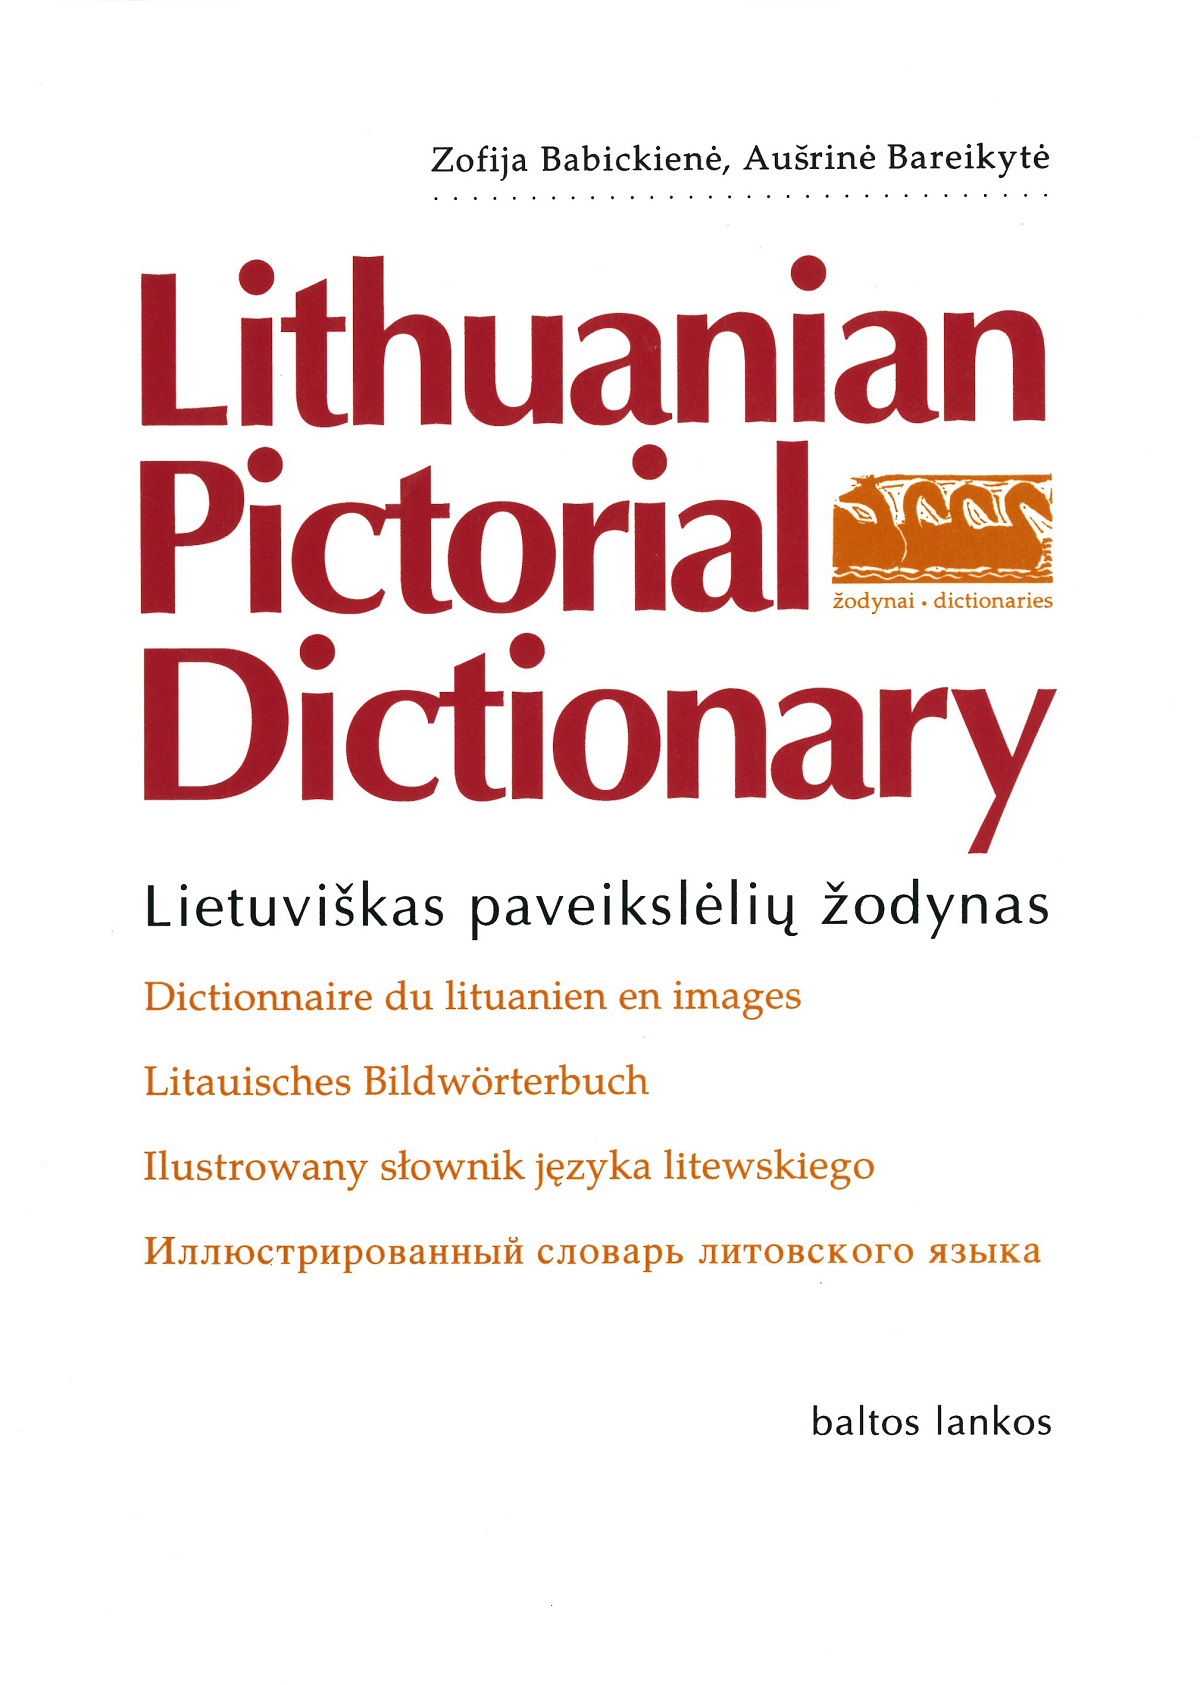 Lietuviškas paveikslėlių žodynas - 1996